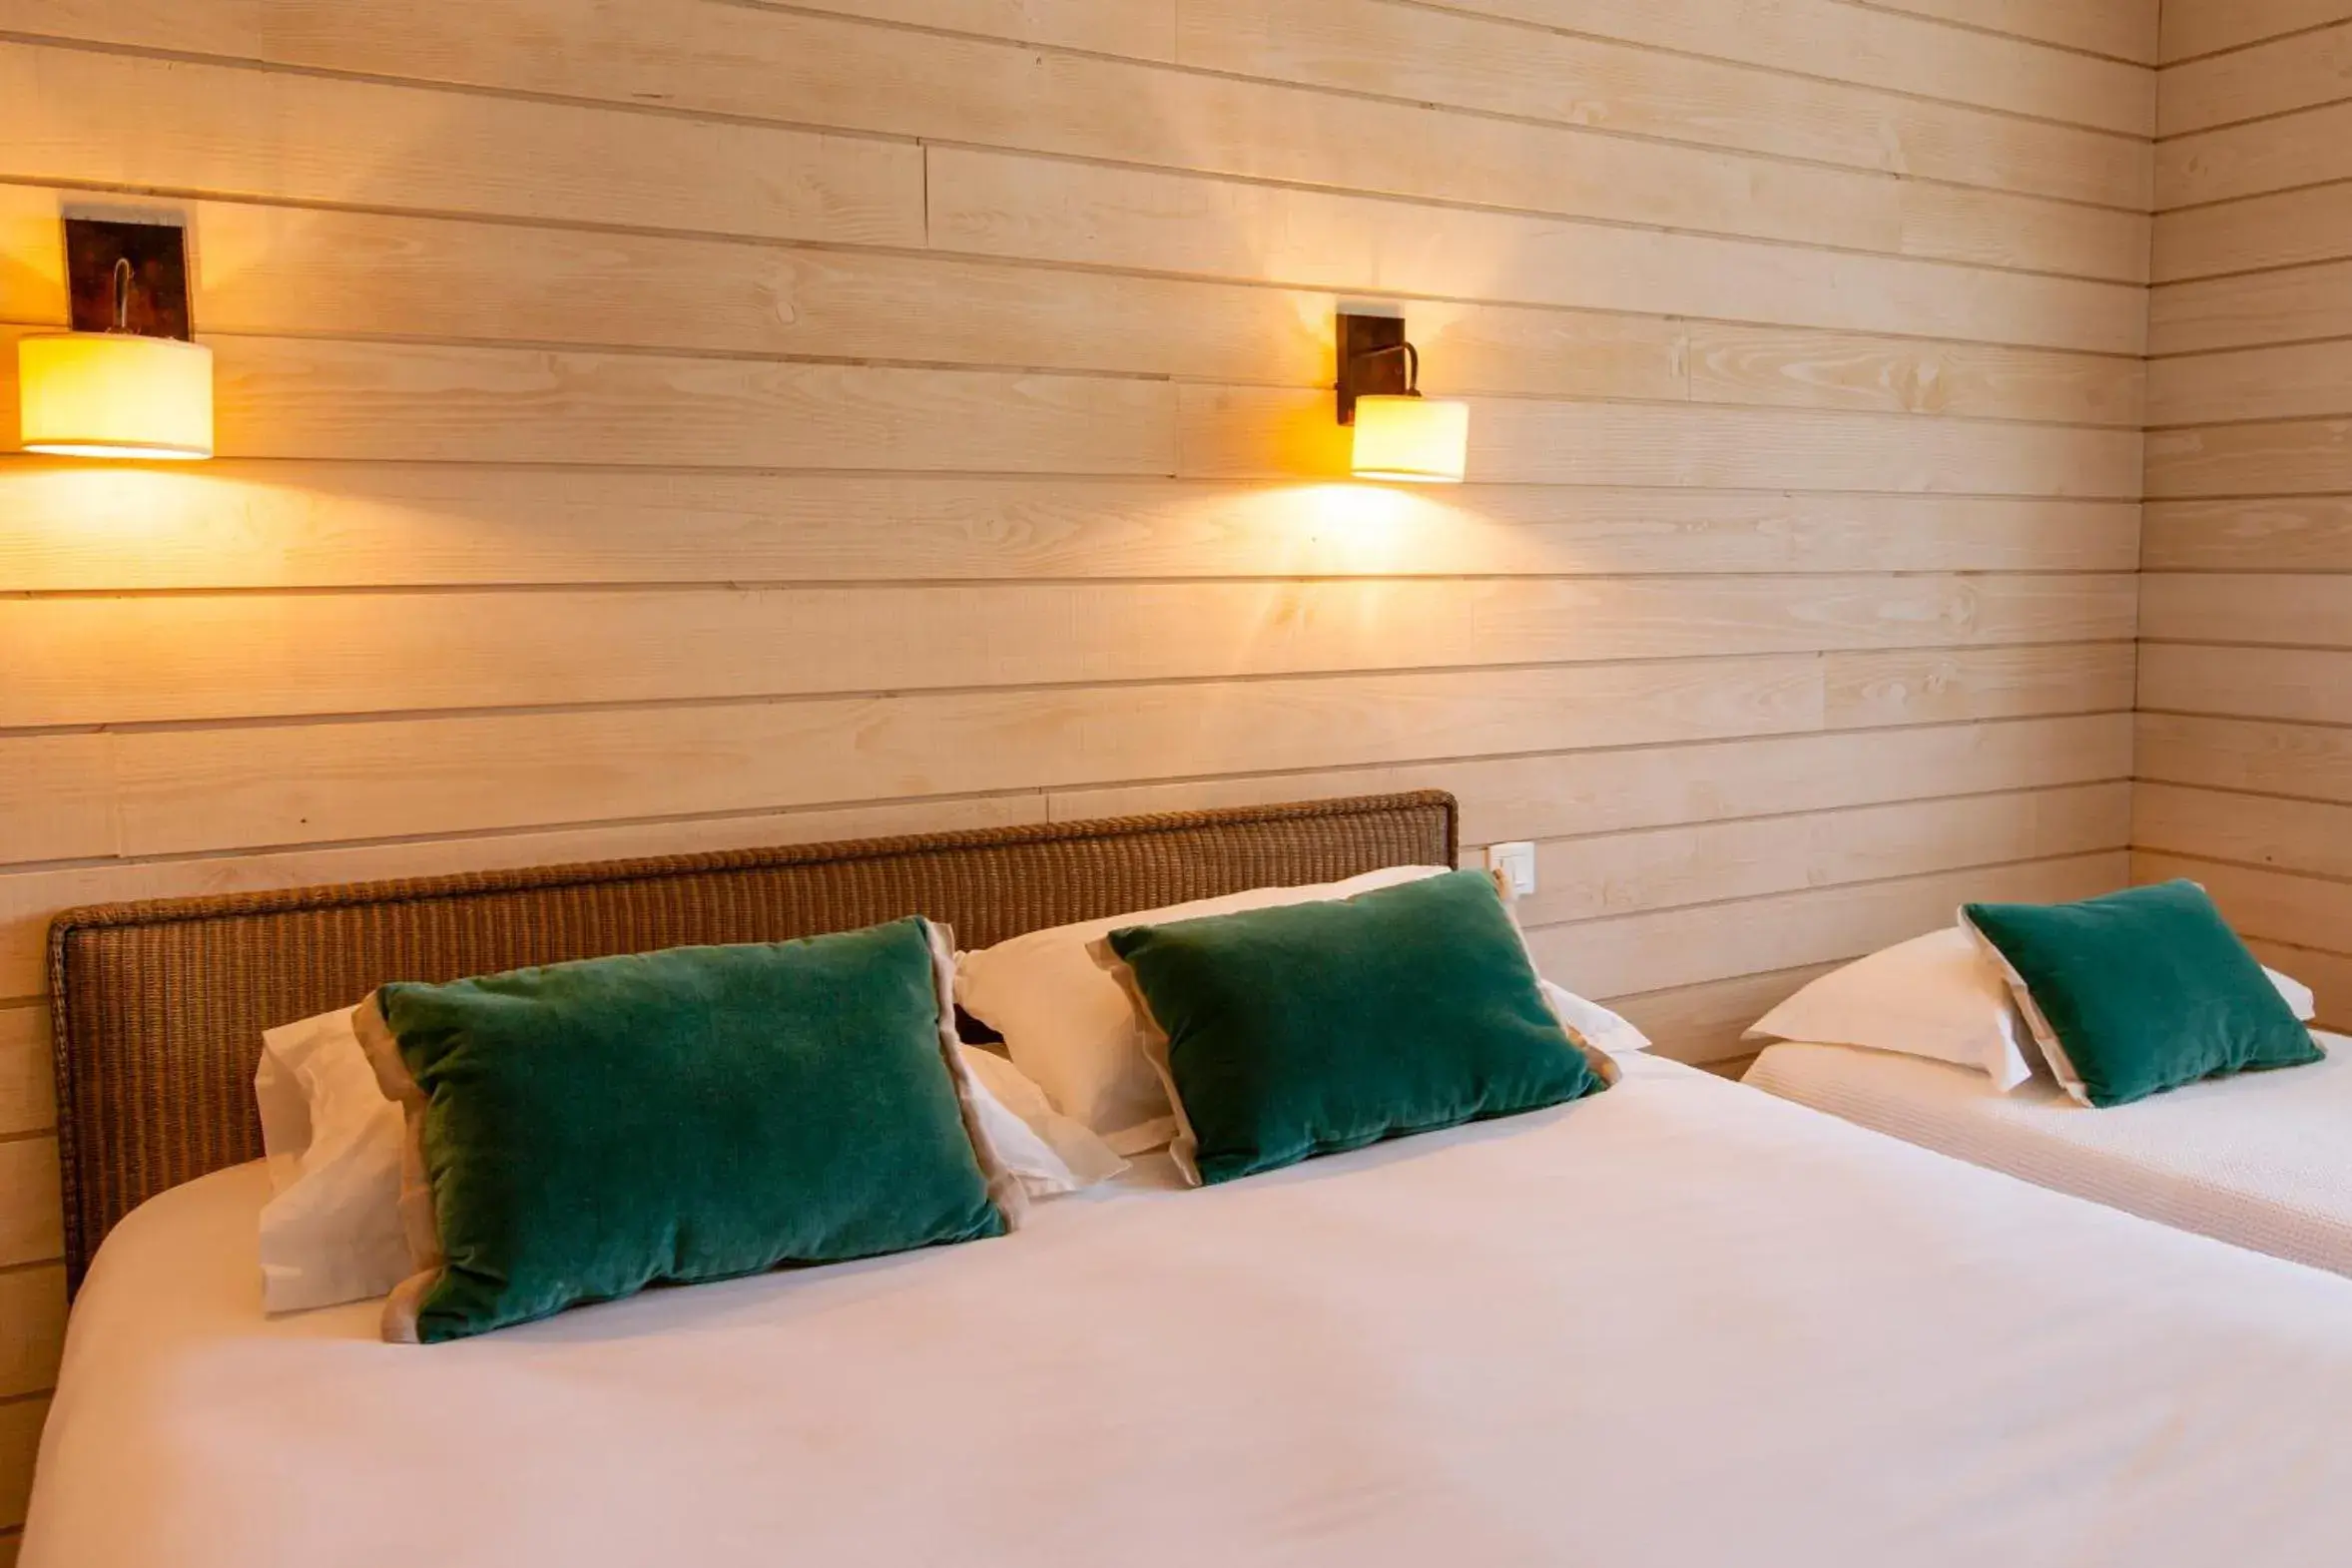 Bed in Hôtel de La Plage by Inwood Hotels